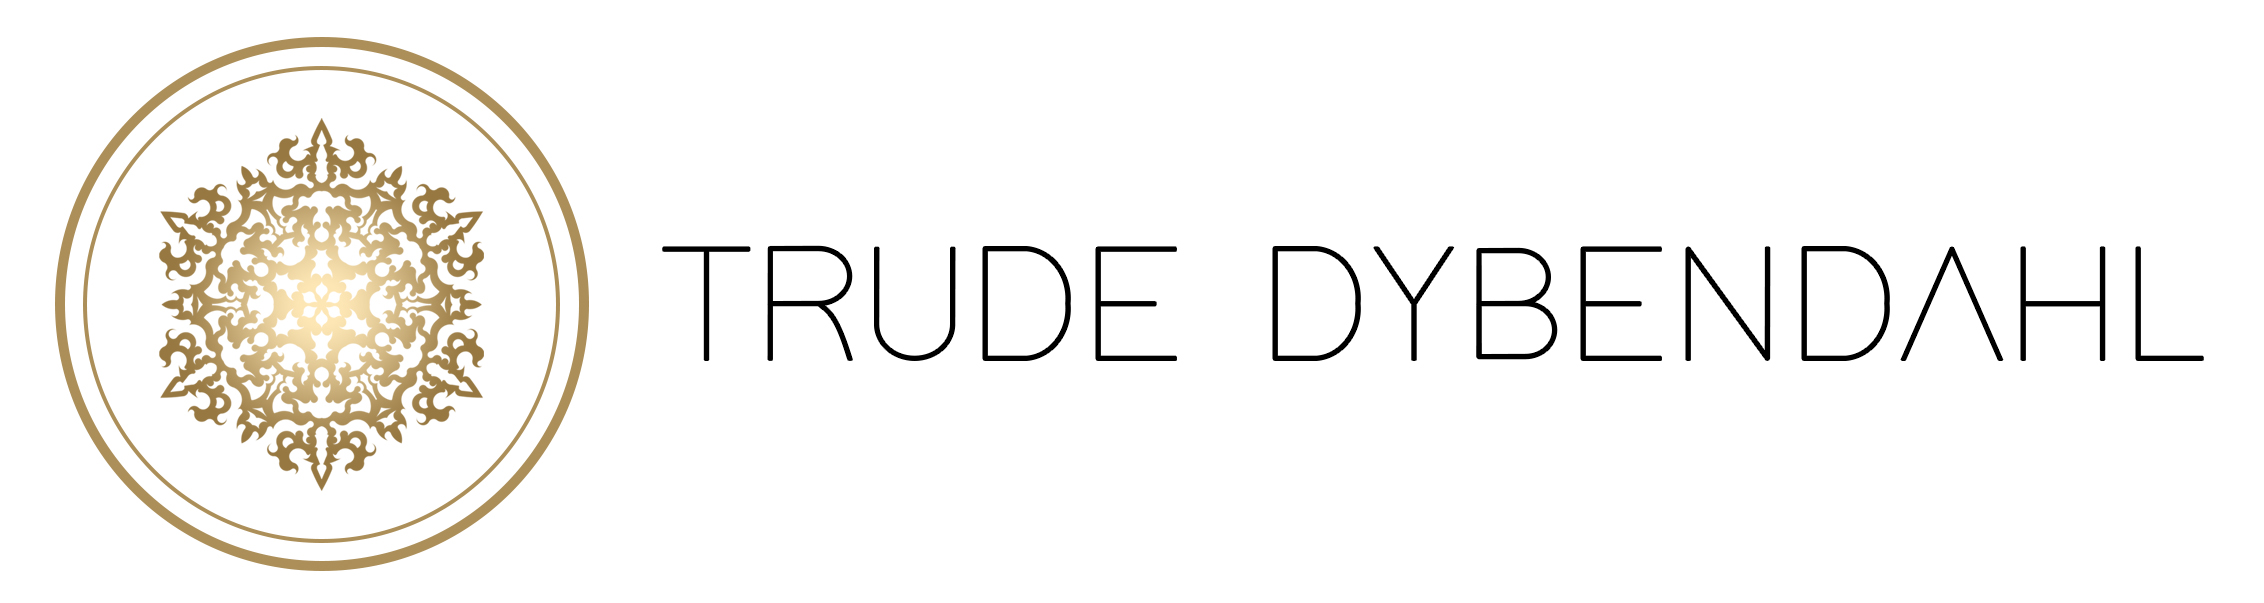 Trudes Dybendahl logo